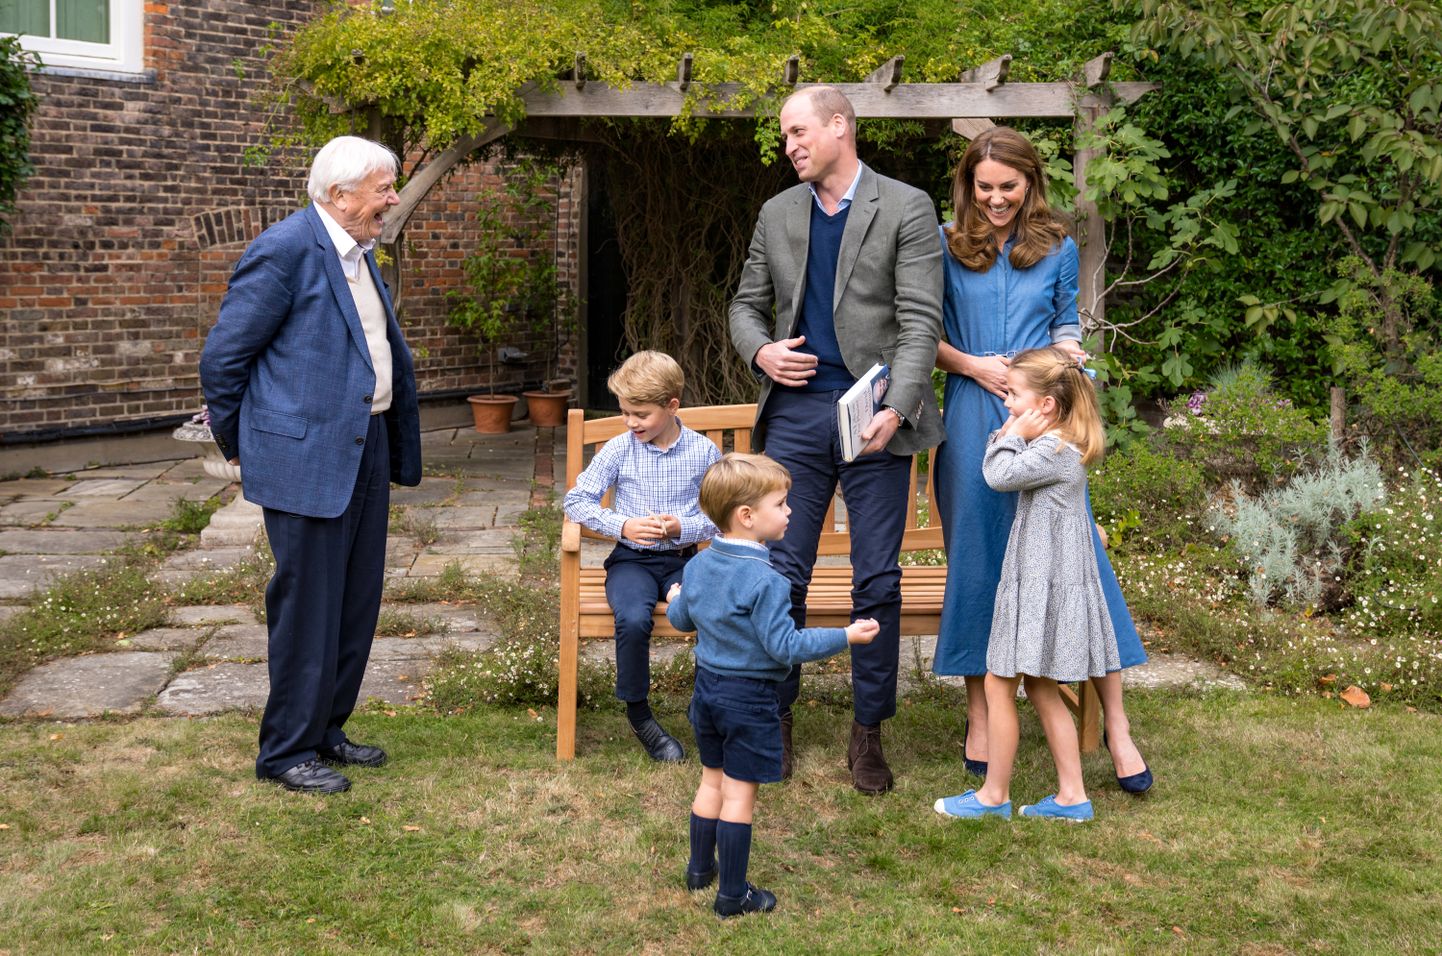 Prints William ja Kate Middleton koos oma laste prints George'i (istumas), prints Louis'i ja printsess Charlotte'iga kohtumas David Attenborough'ga.